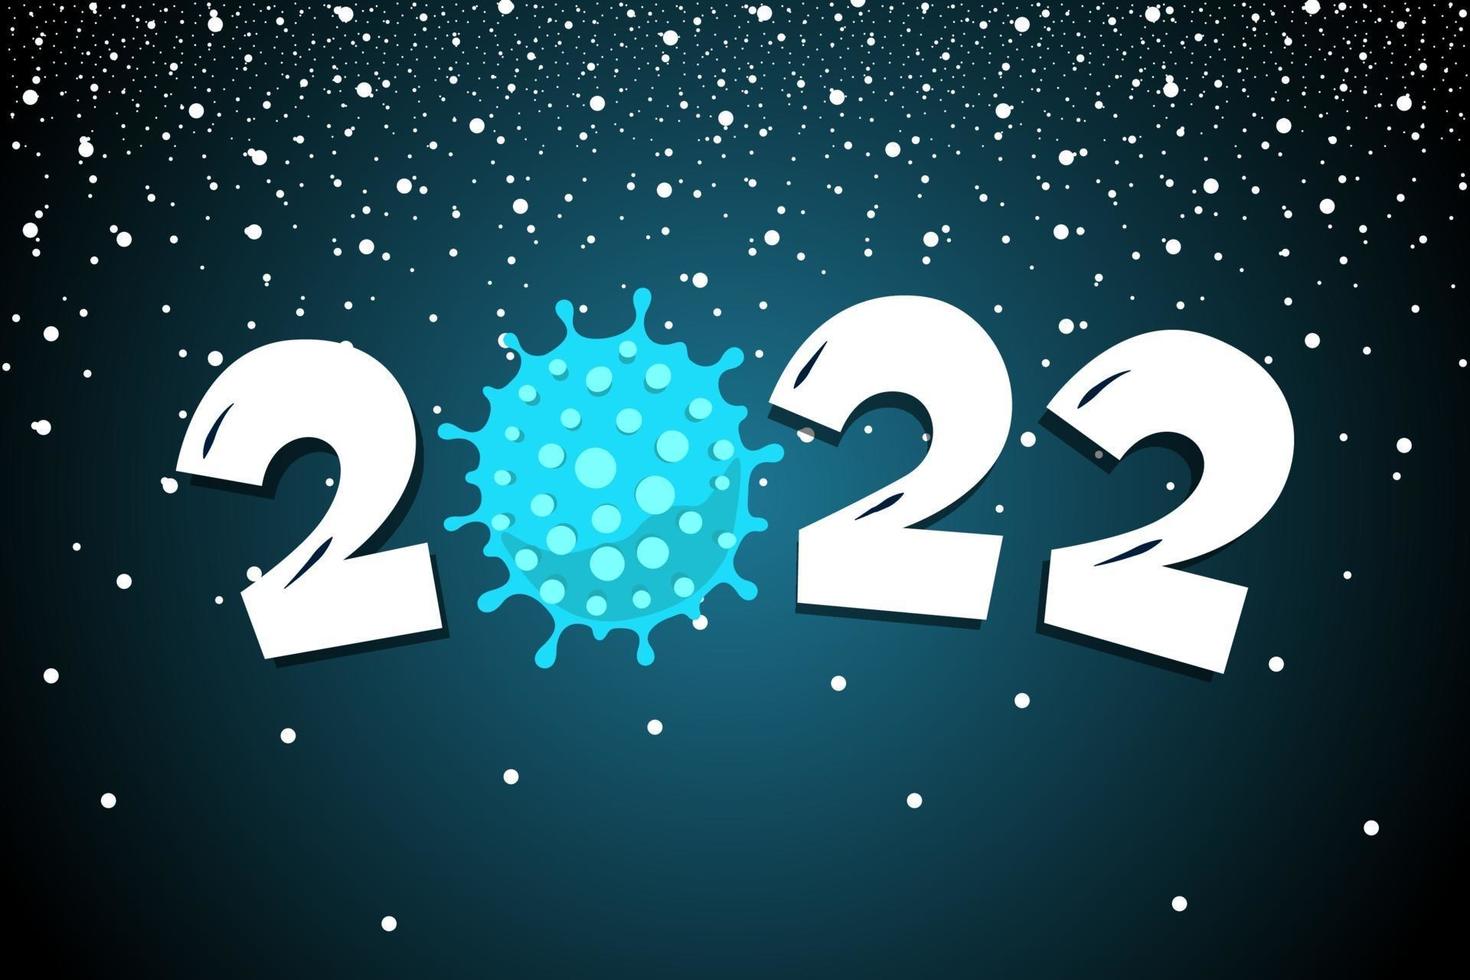 felice anno nuovo numero 2022 con icona dell'epidemia di coronavirus covid-19 vettore